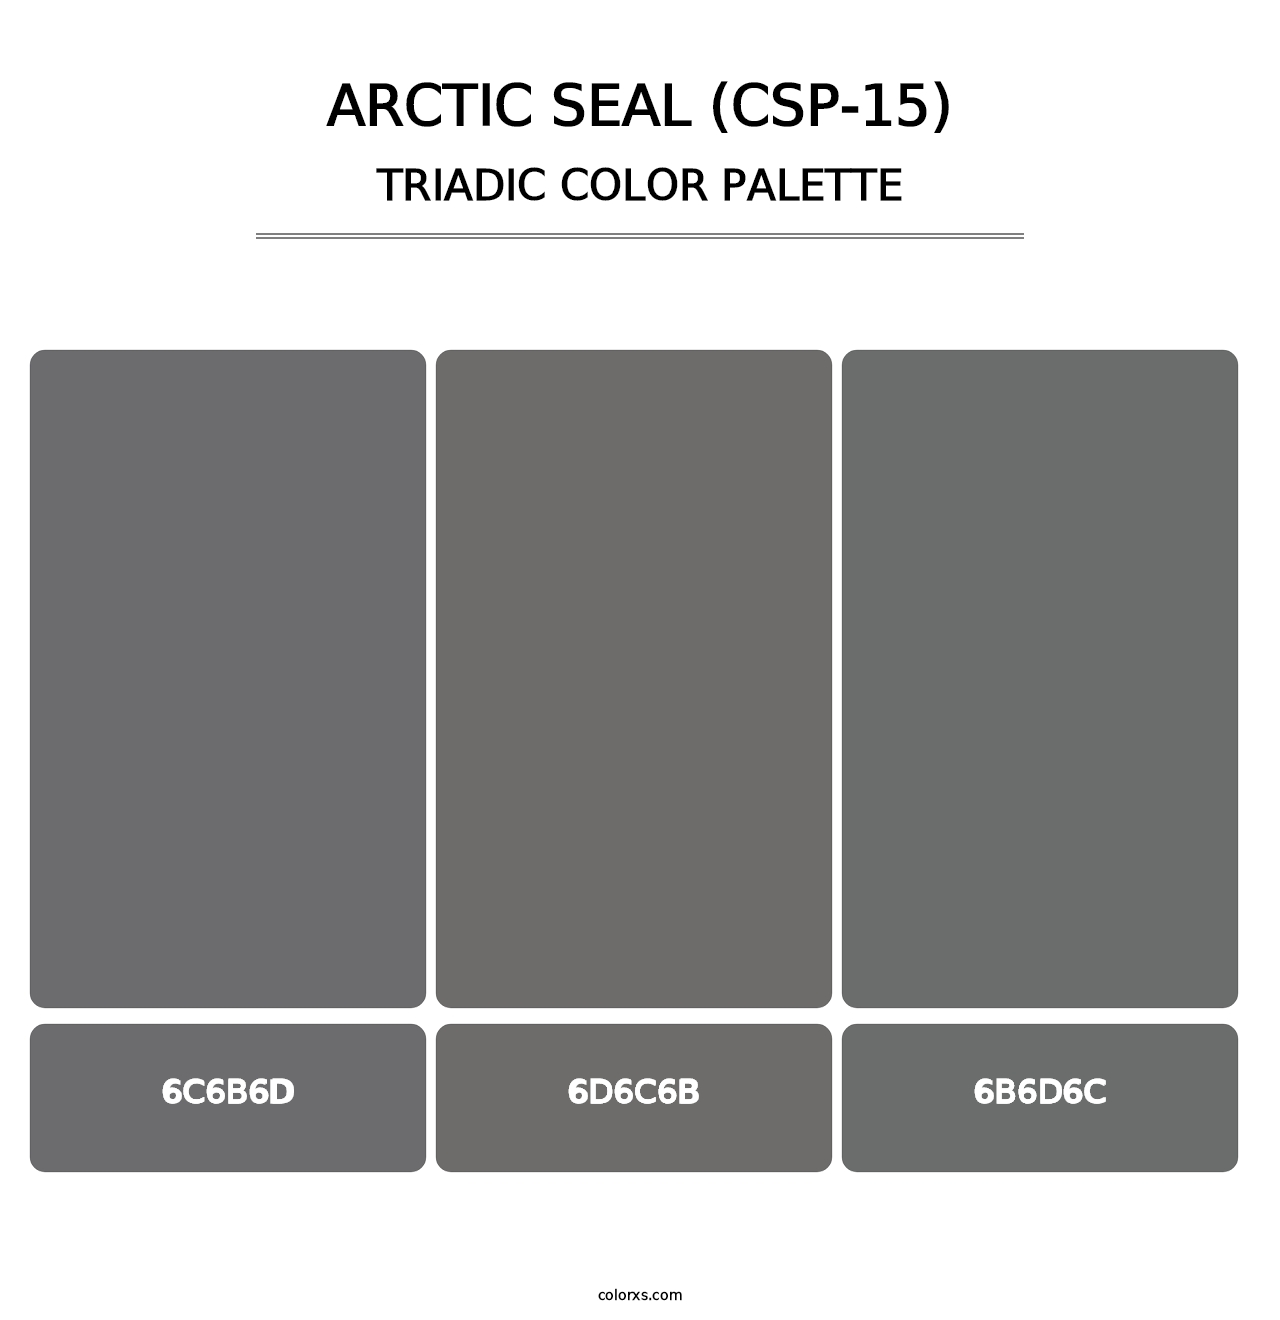 Arctic Seal (CSP-15) - Triadic Color Palette